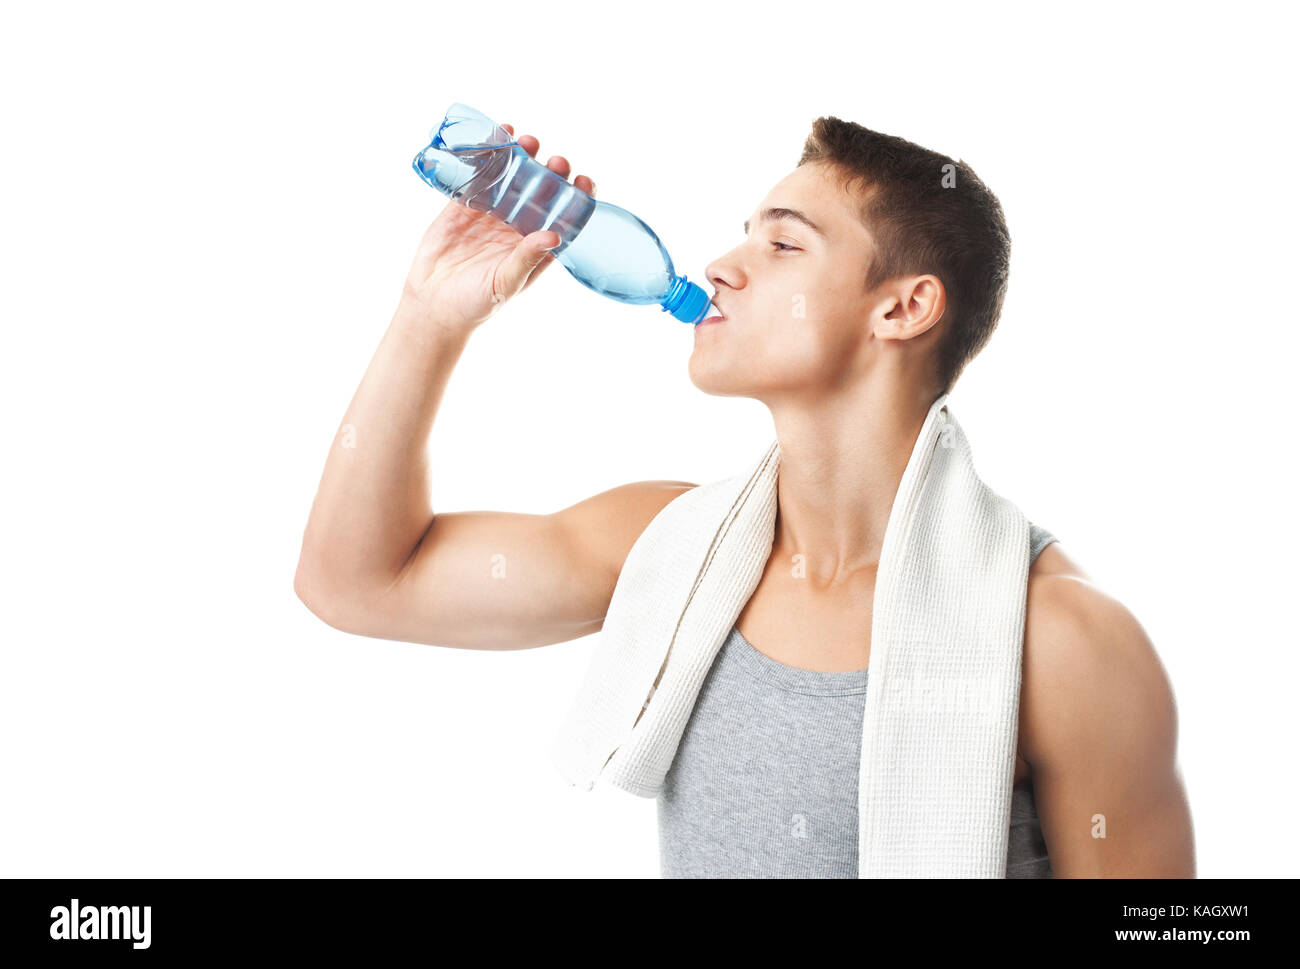 Спортсмен простудился что делать спортсмену. Человек с бутылкой воды. Спортсмен с бутылкой воды. Спортсмен пьет воду. Вода для спортсменов.